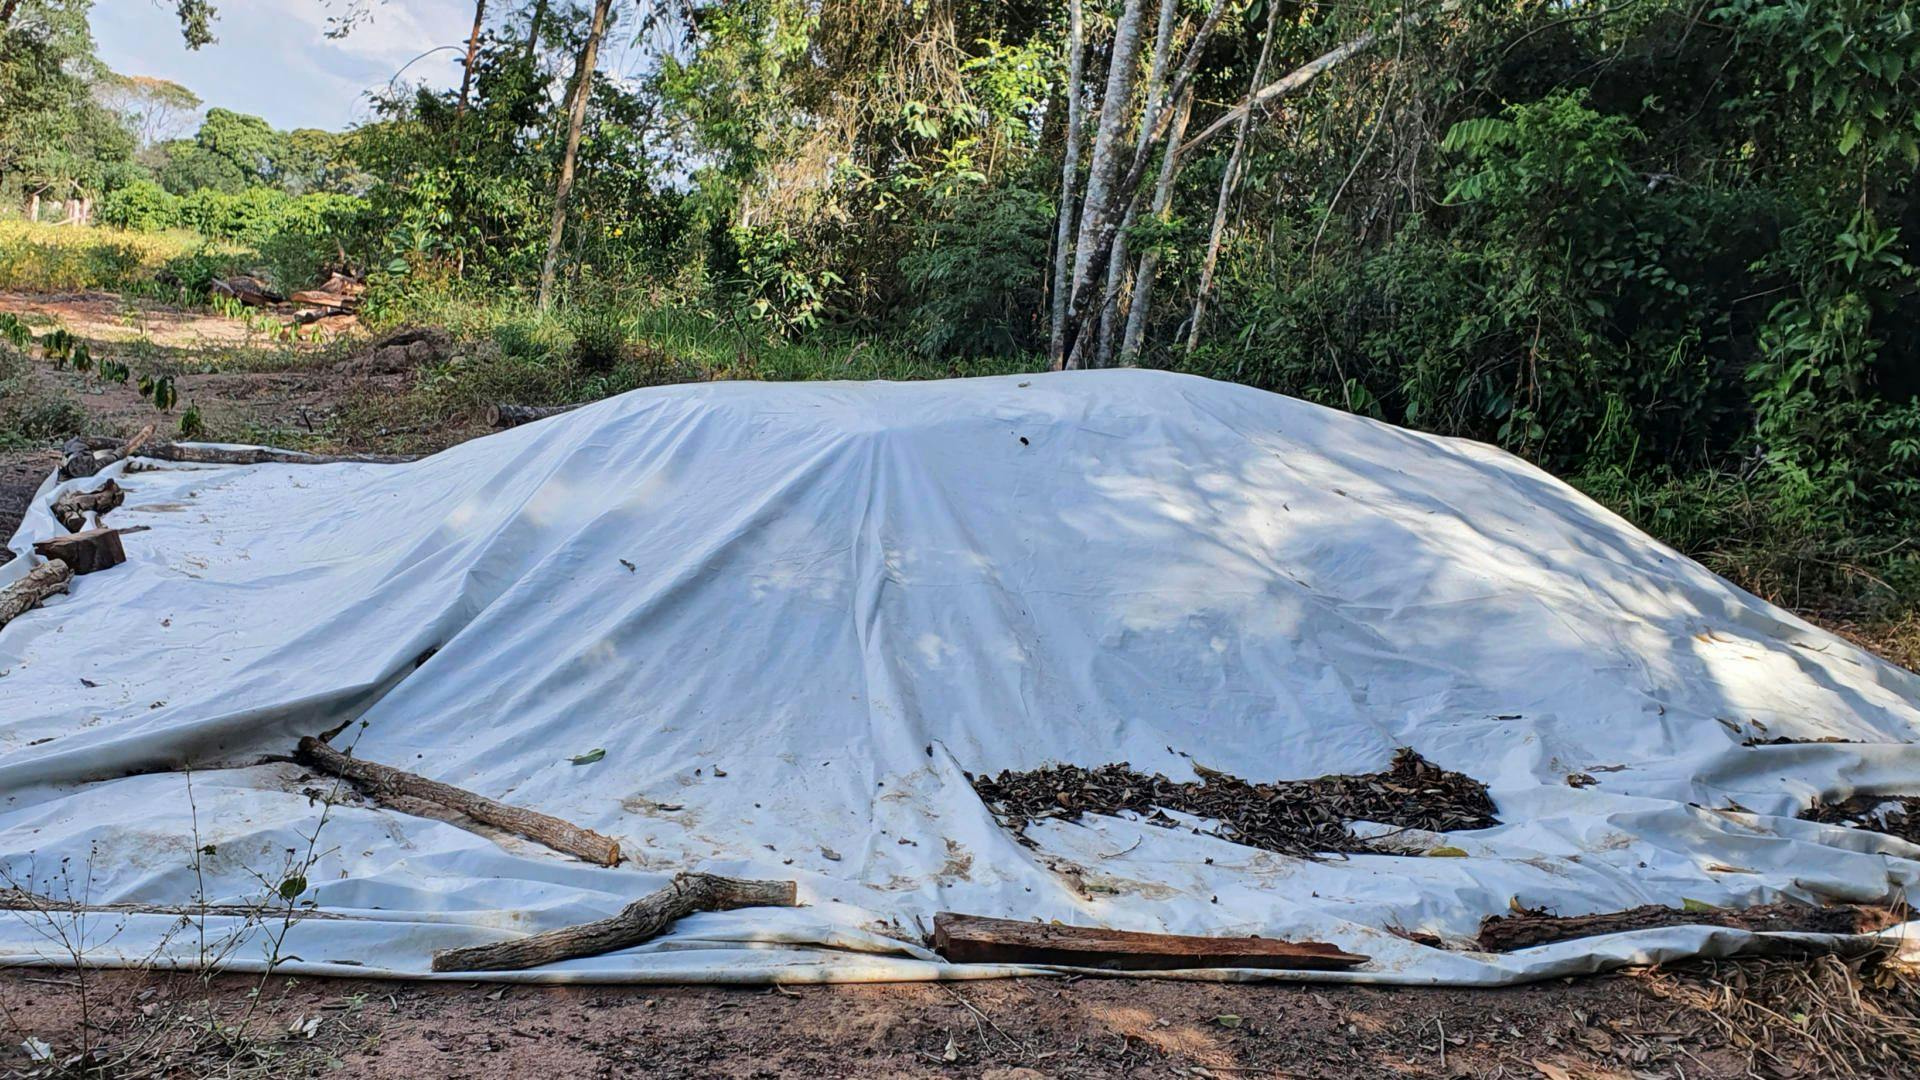 Bokashi being prepared under a tarp